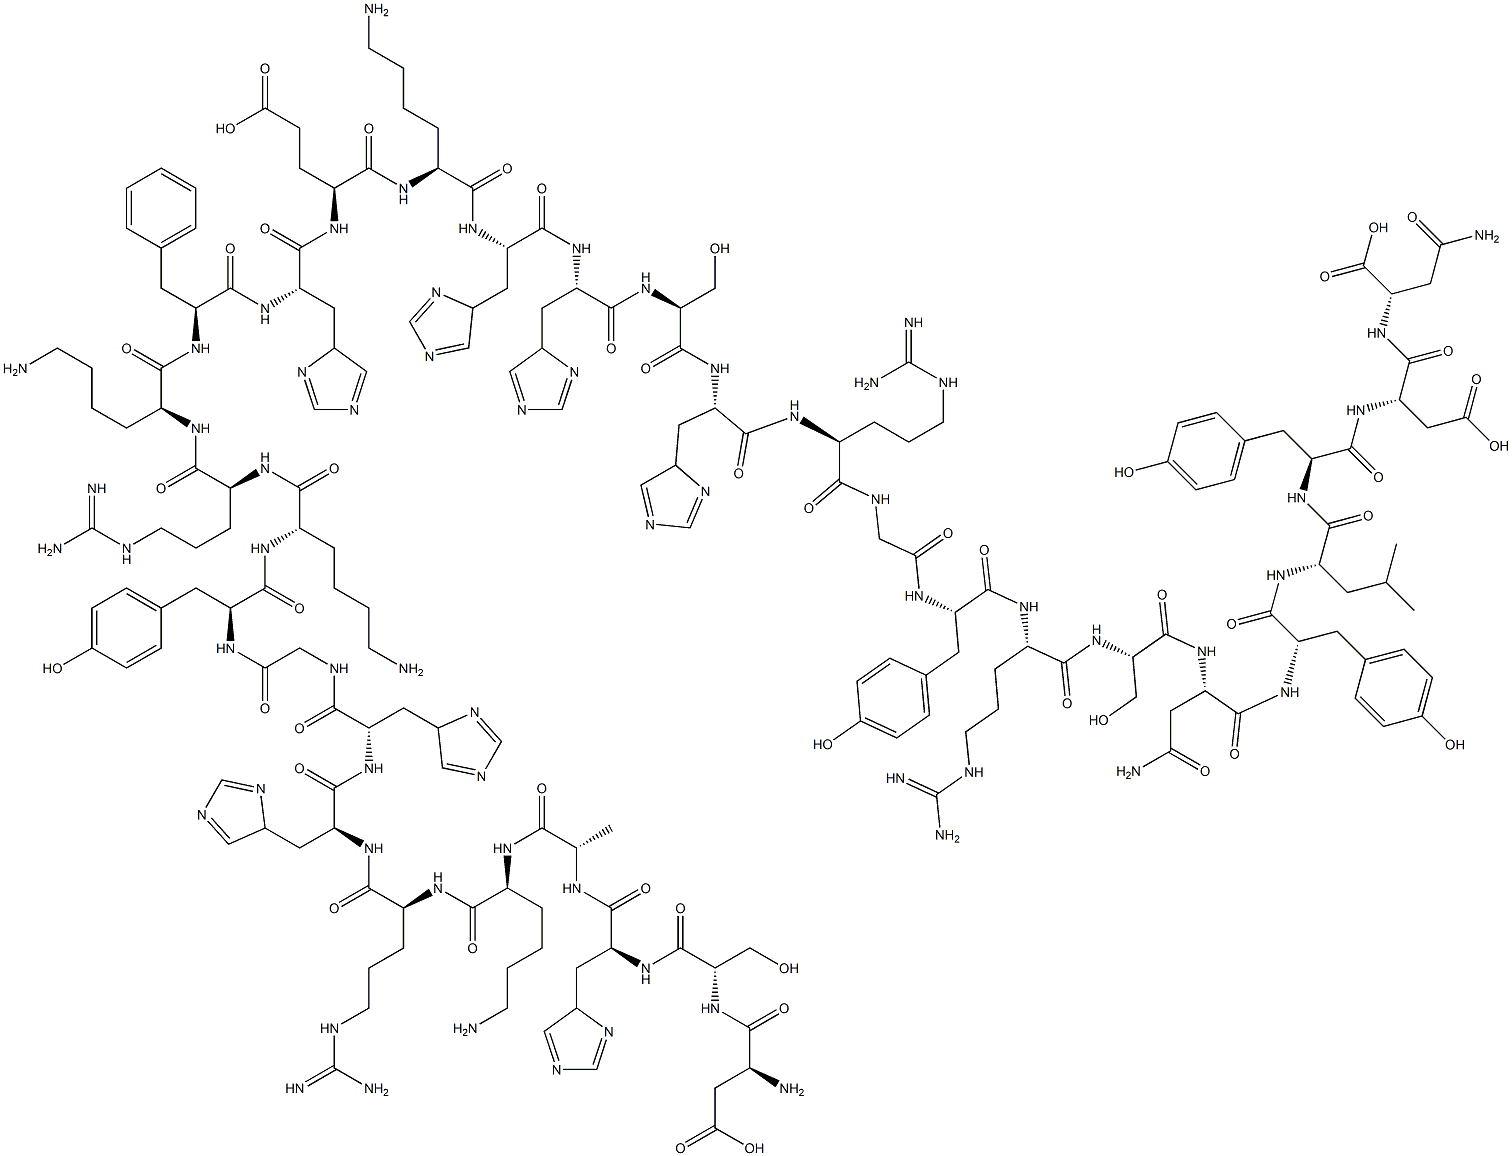 L-Asparagine, L-a-aspartyl-L-seryl-L-histidyl-L-alanyl-L-lysyl-L-arginyl-L-histidyl-L-histidylglycyl-L-tyrosyl-L-lysyl-L-arginyl-L-lysyl-L-phenylalanyl-L-histidyl-L-a-glutamyl-L-lysyl-L-histidyl-L-histidyl-L-seryl-L-histidyl-L-arginylglycyl-L-tyrosyl-L-arginyl-L-seryl-L-asparaginyl-L-tyrosyl-L-leucyl-L-tyrosyl-L-a-aspartyl- 化学構造式